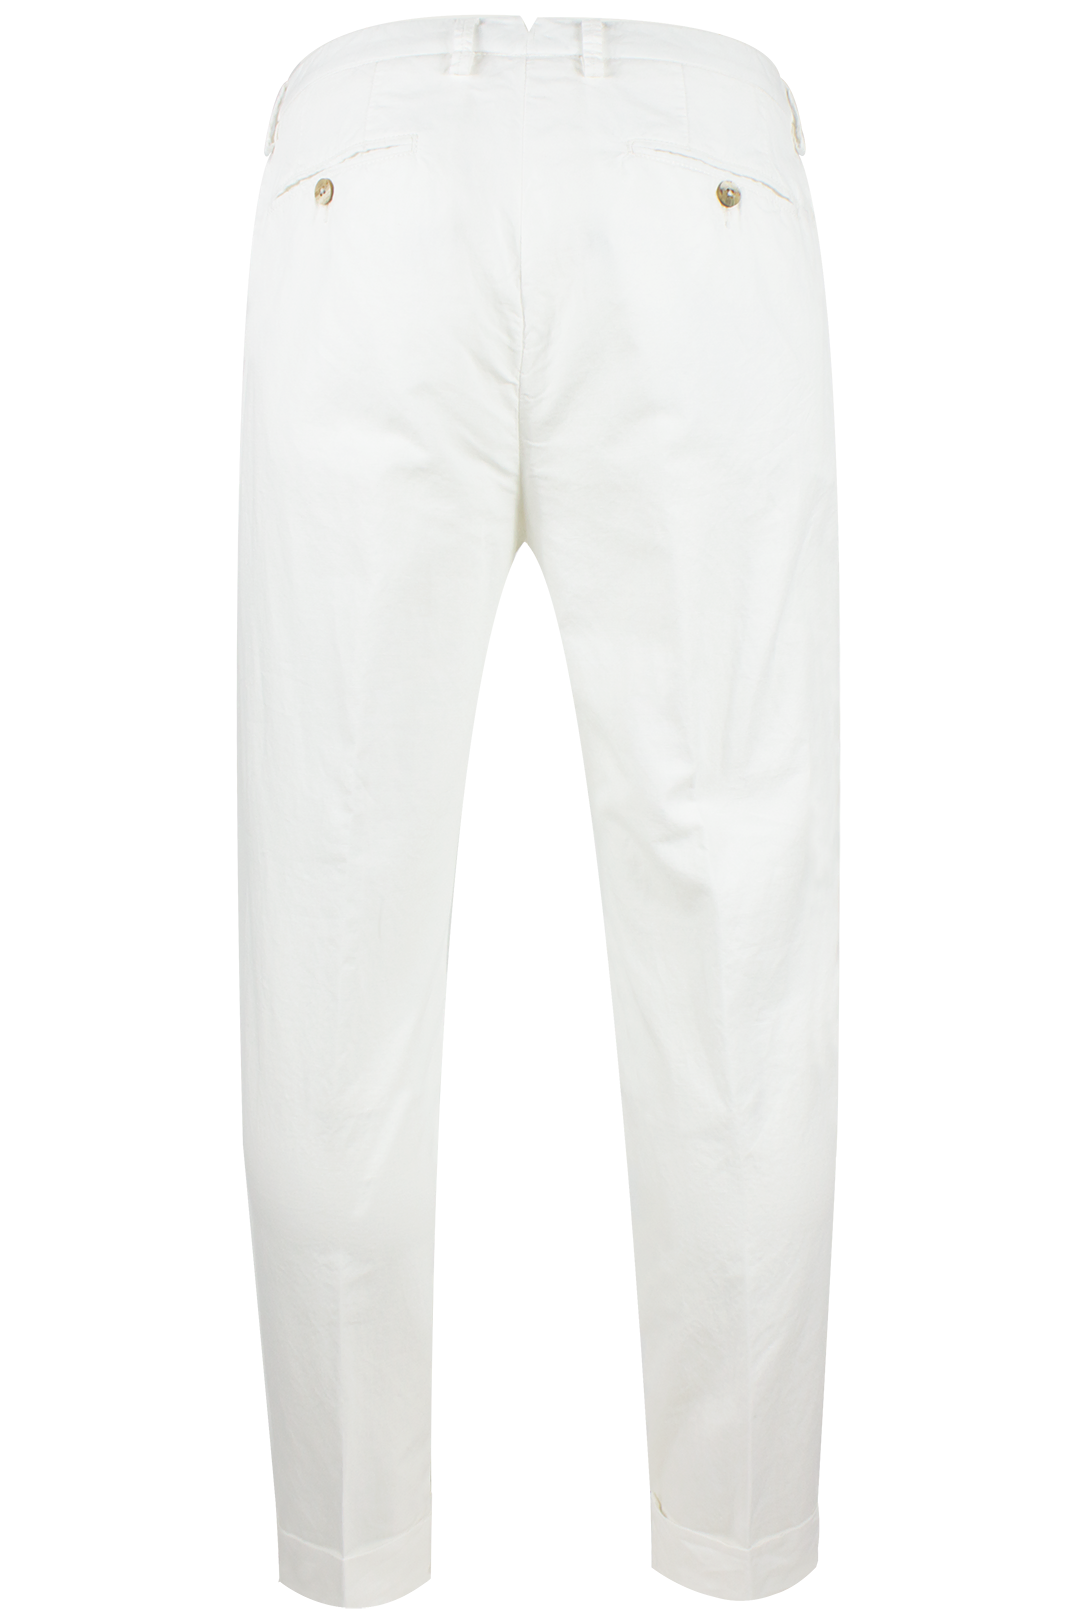 Pantalone con una pince in cotone e lino bianco retro